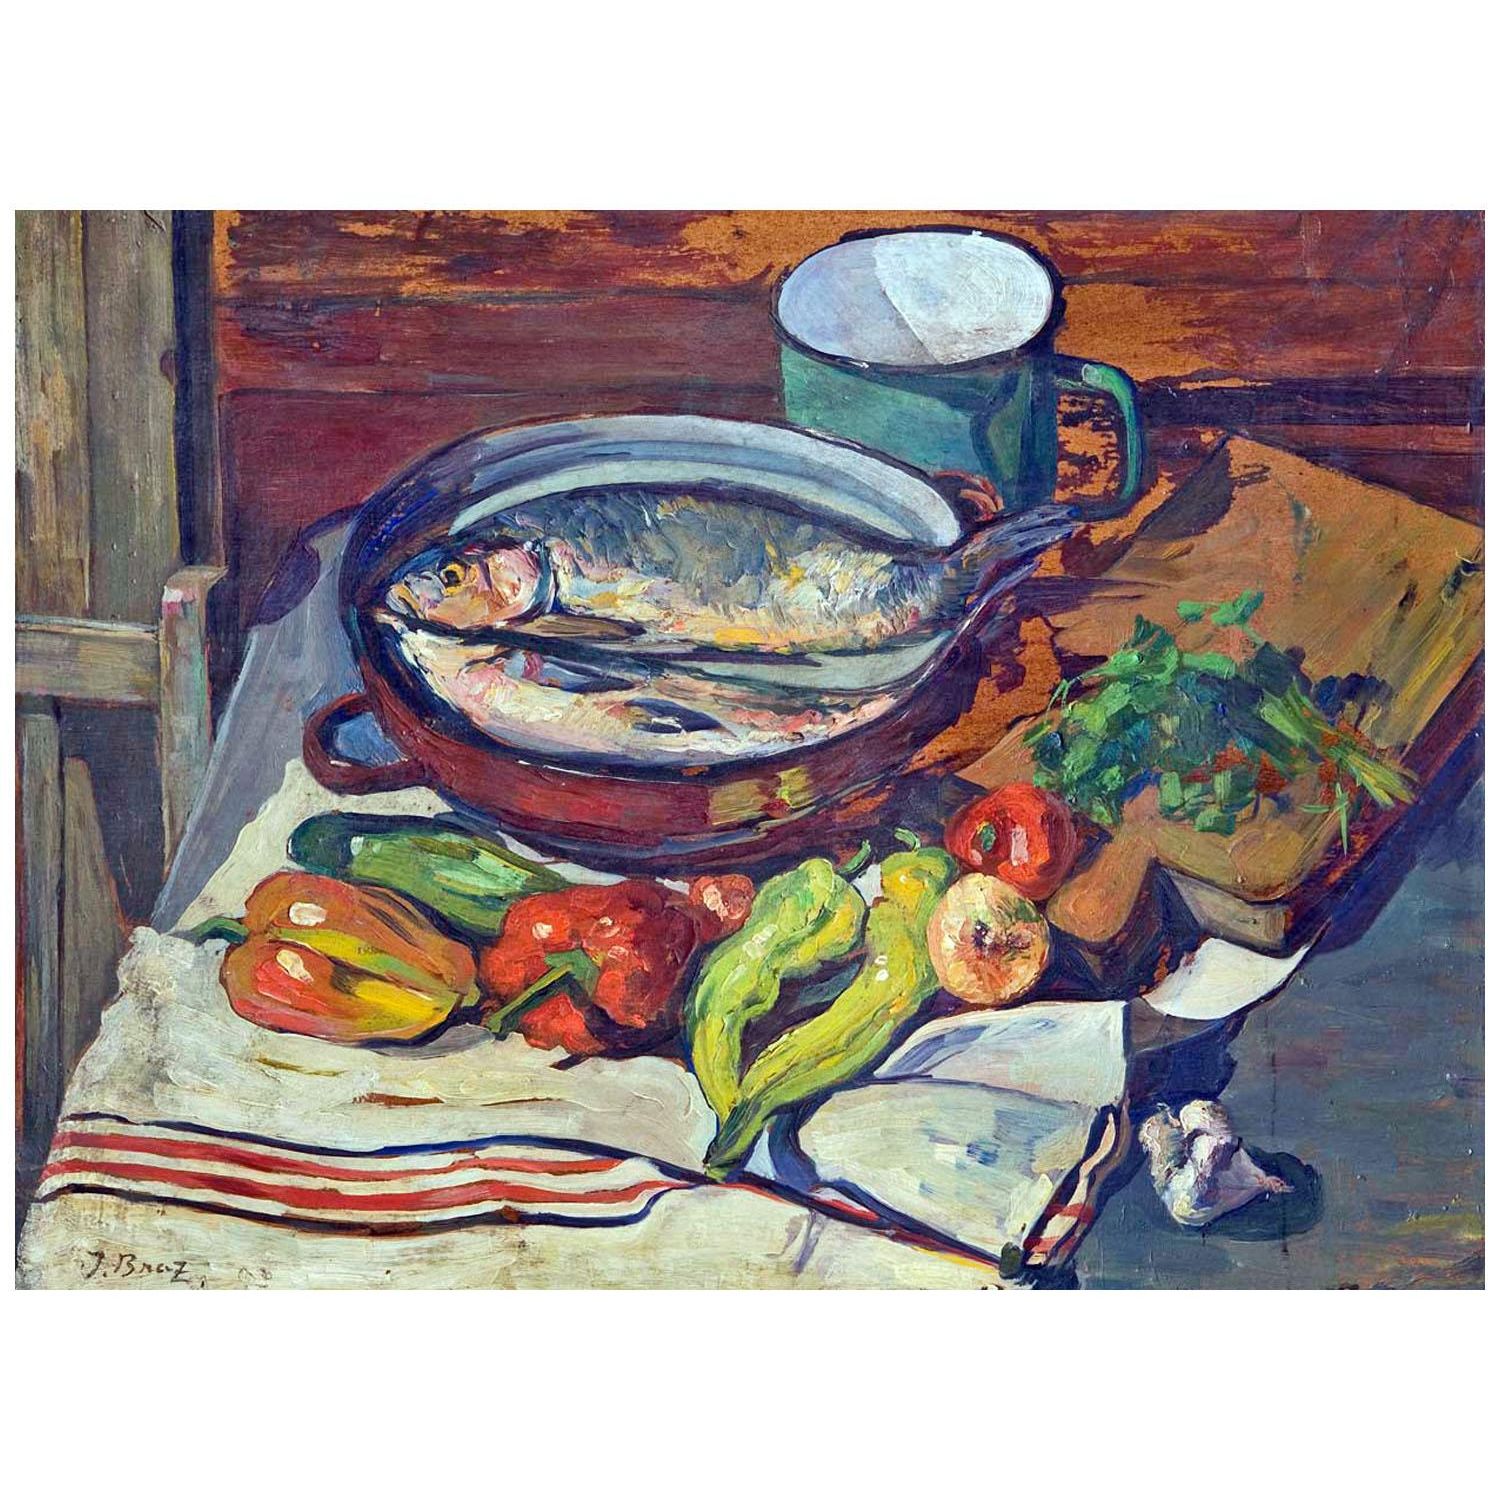 Осип Браз. Натюрморт с овощами и рыбой. 1930. Частная коллекция